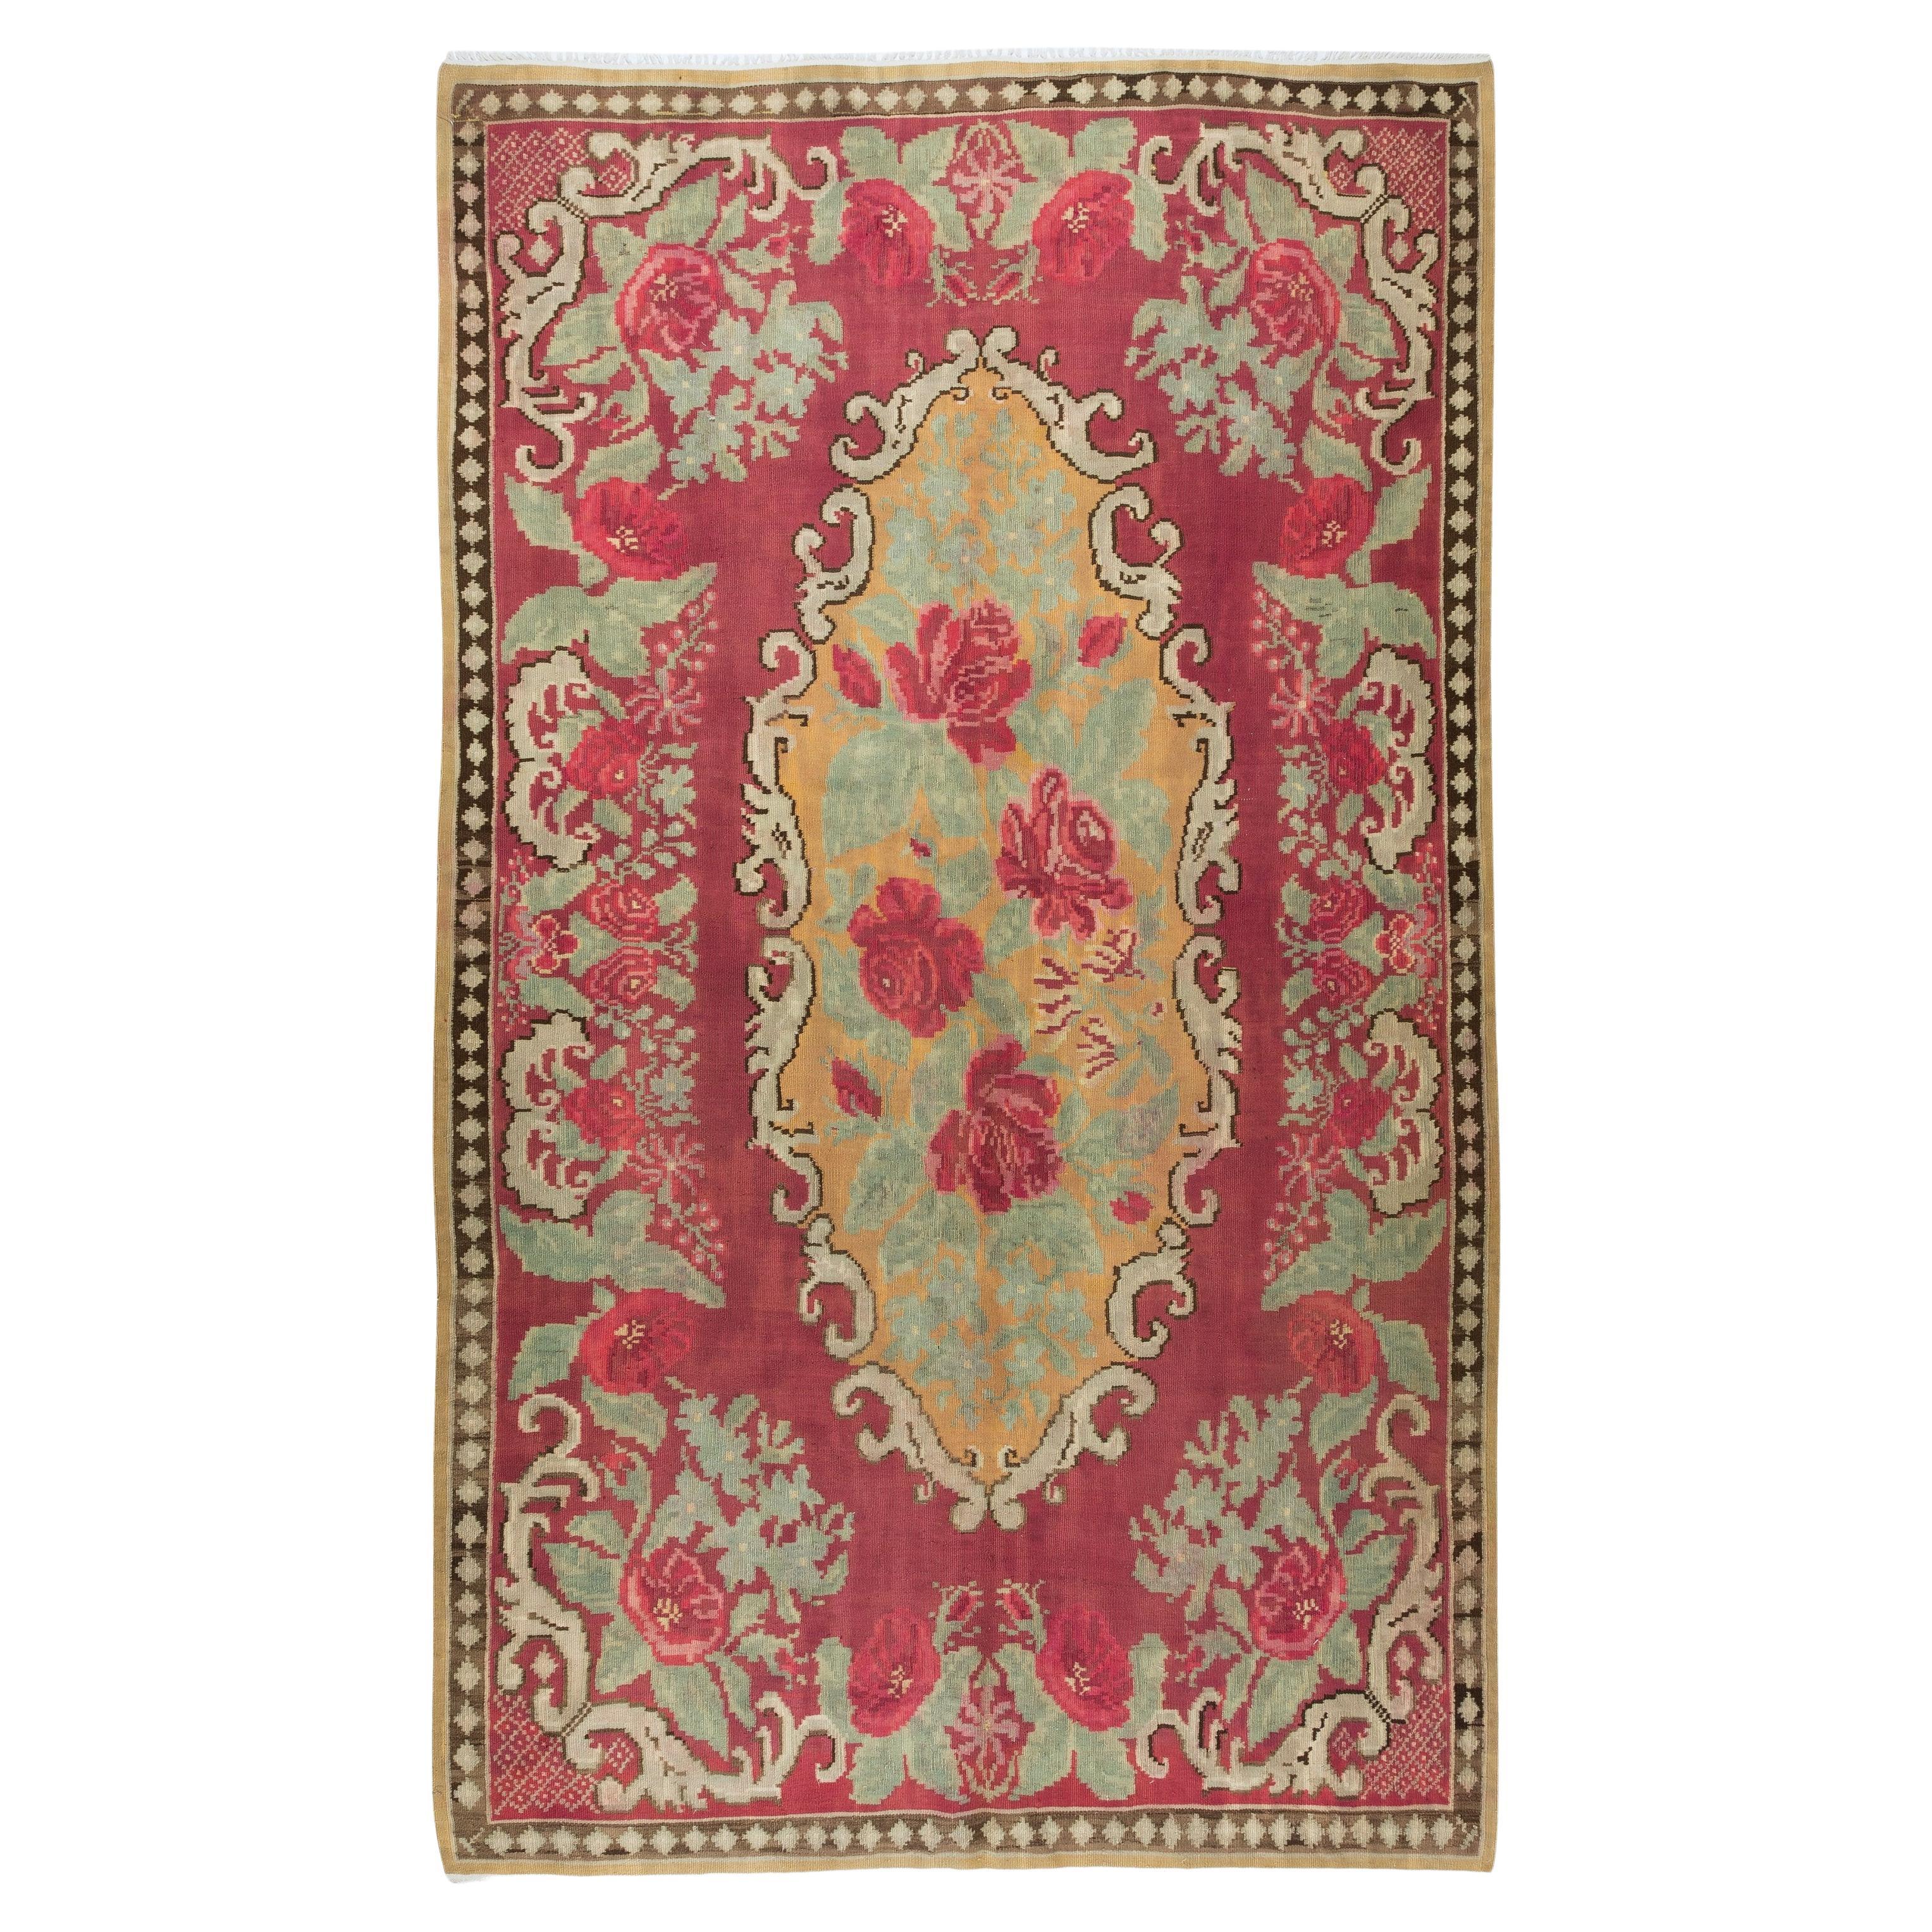 5.8x10 Ft Handmade Moldovan Kilim, Vintage Rug. Rose Pattern Tapestry. 100% Wool